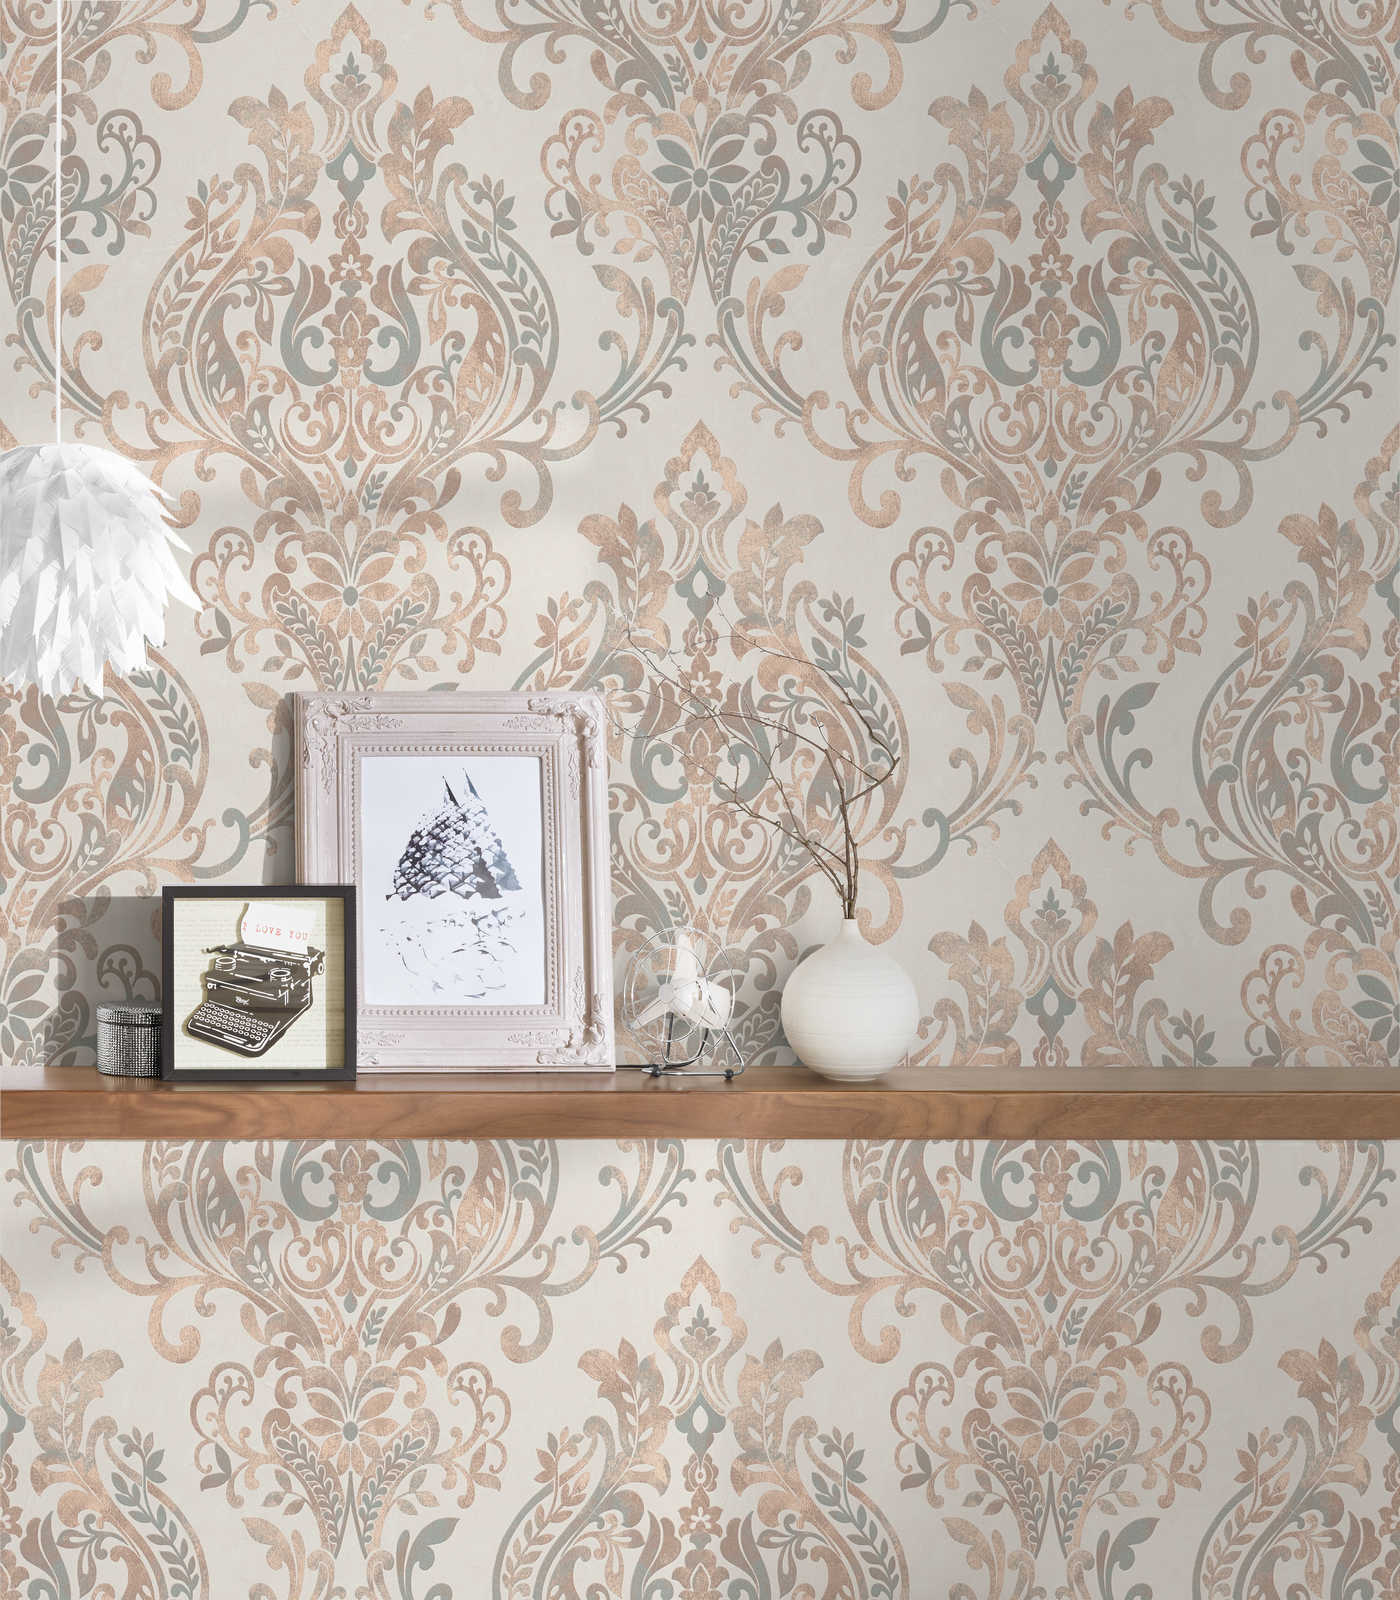             Zelfklevend behangpapier | Ornament patroon met metallic effect - beige, crème
        